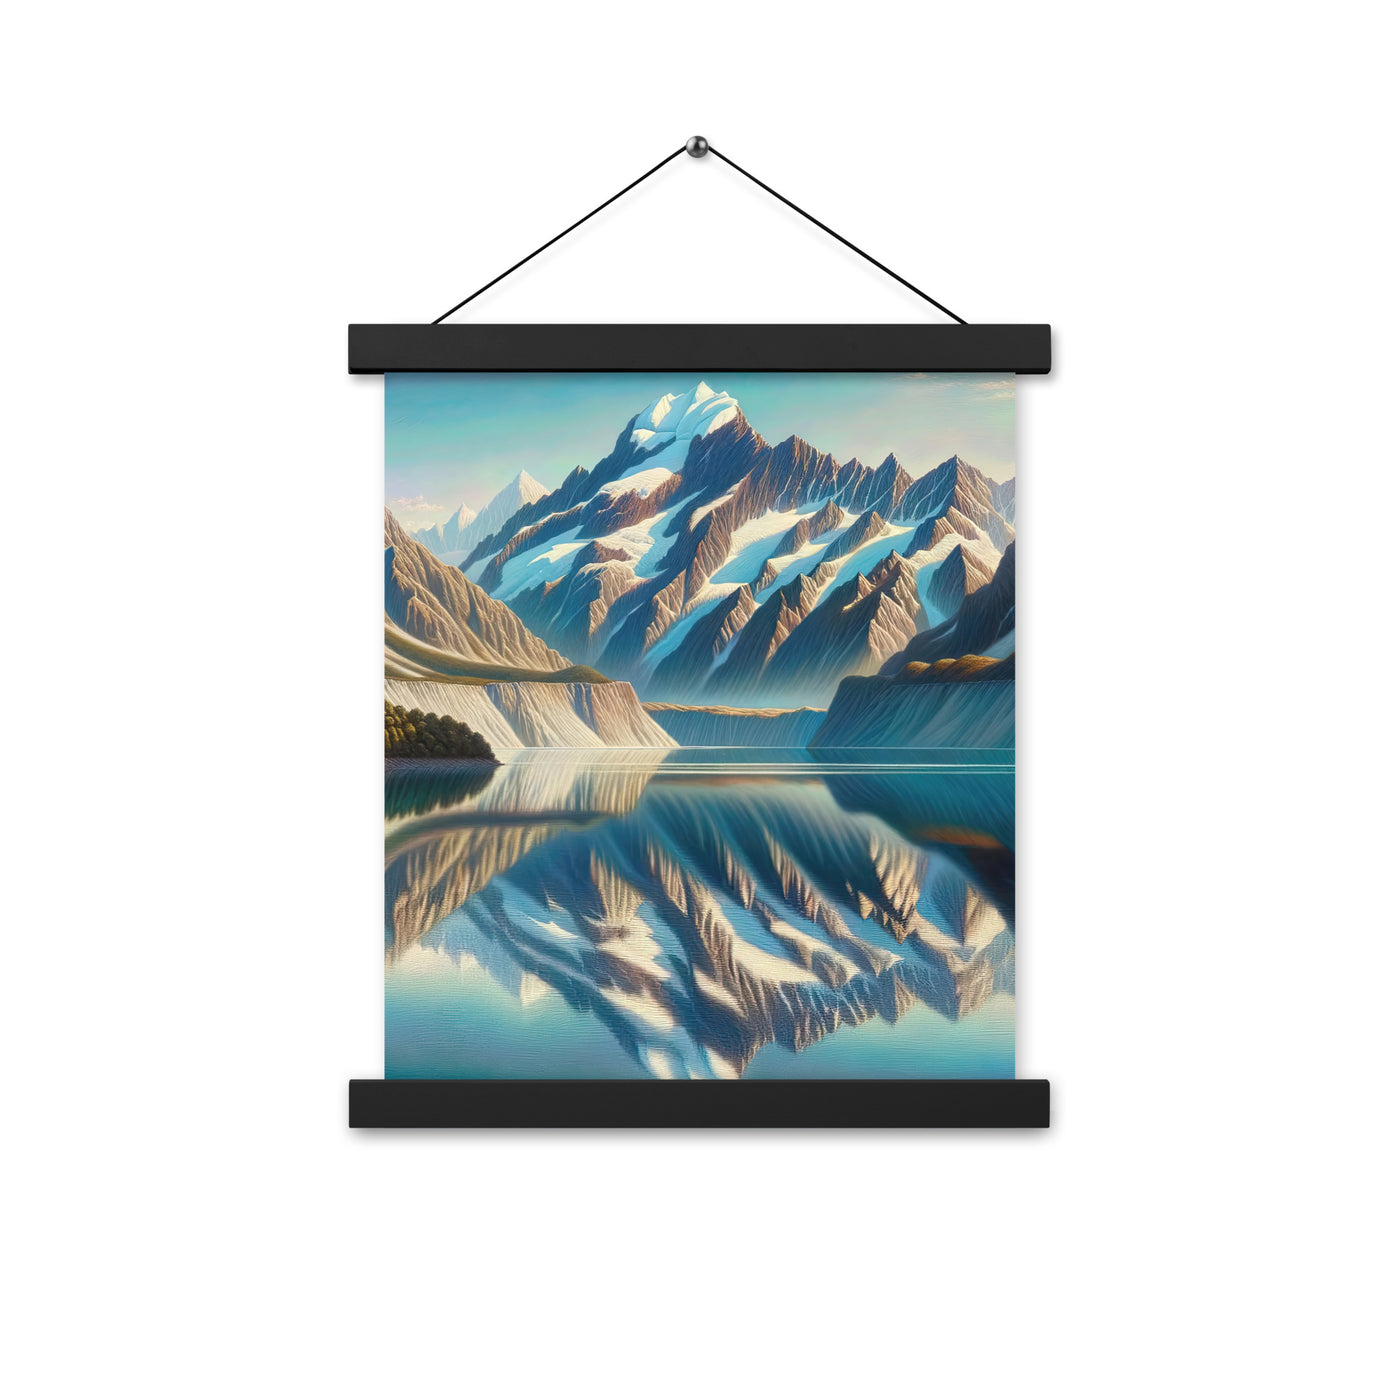 Ölgemälde eines unberührten Sees, der die Bergkette spiegelt - Premium Poster mit Aufhängung berge xxx yyy zzz 27.9 x 35.6 cm